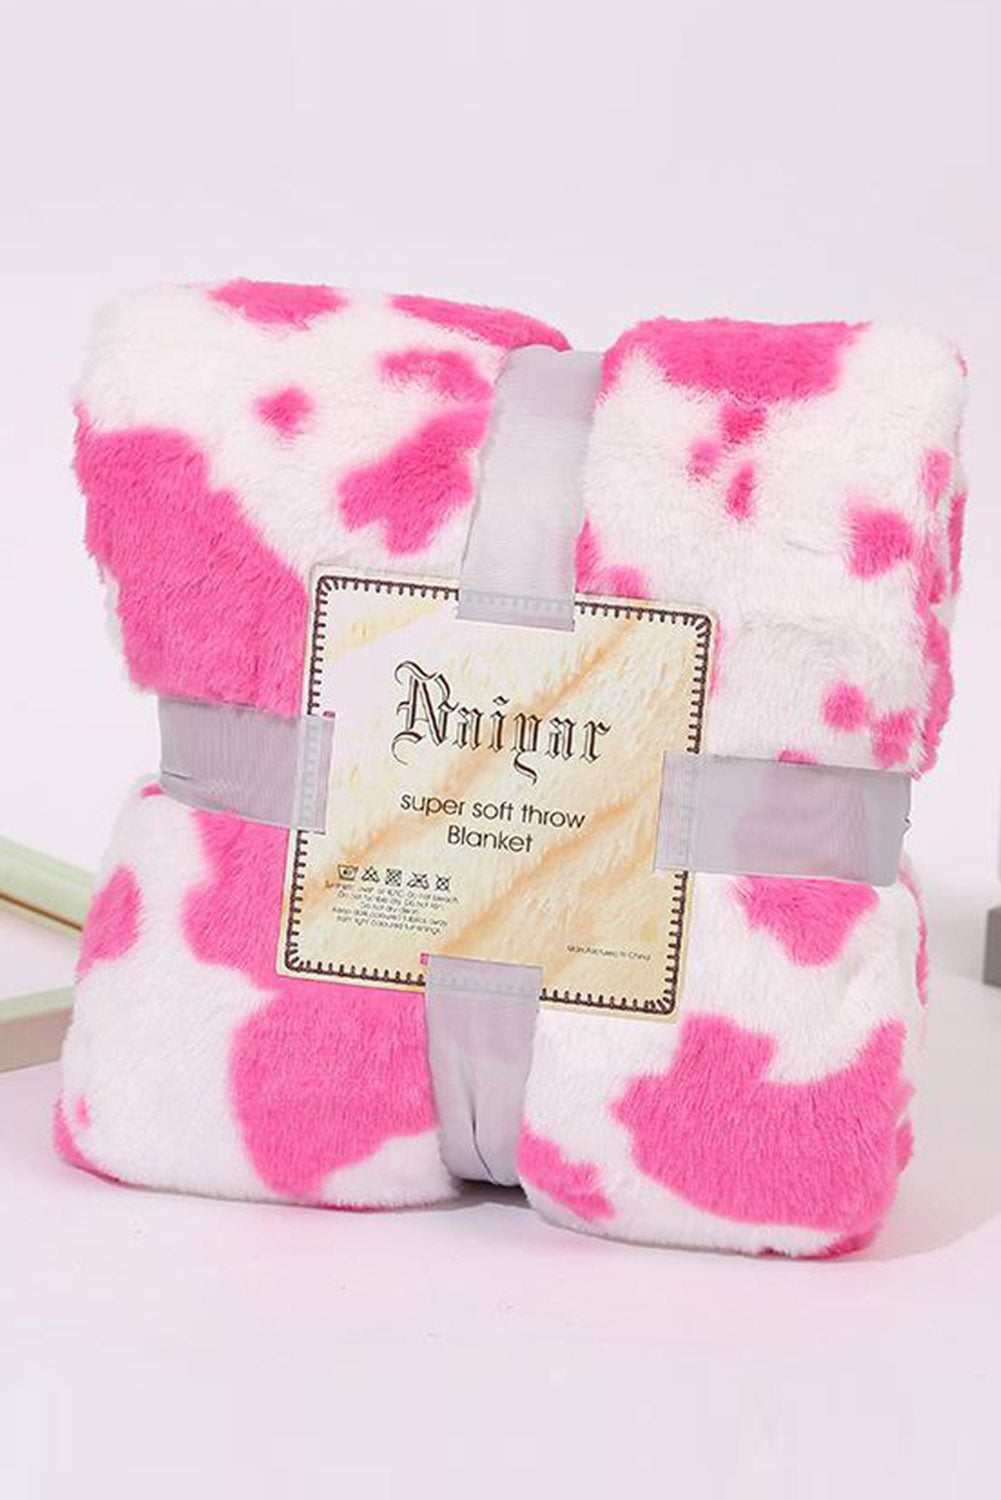 Dark Pink Cow Spot Print Flannel Blanket 75*100cm